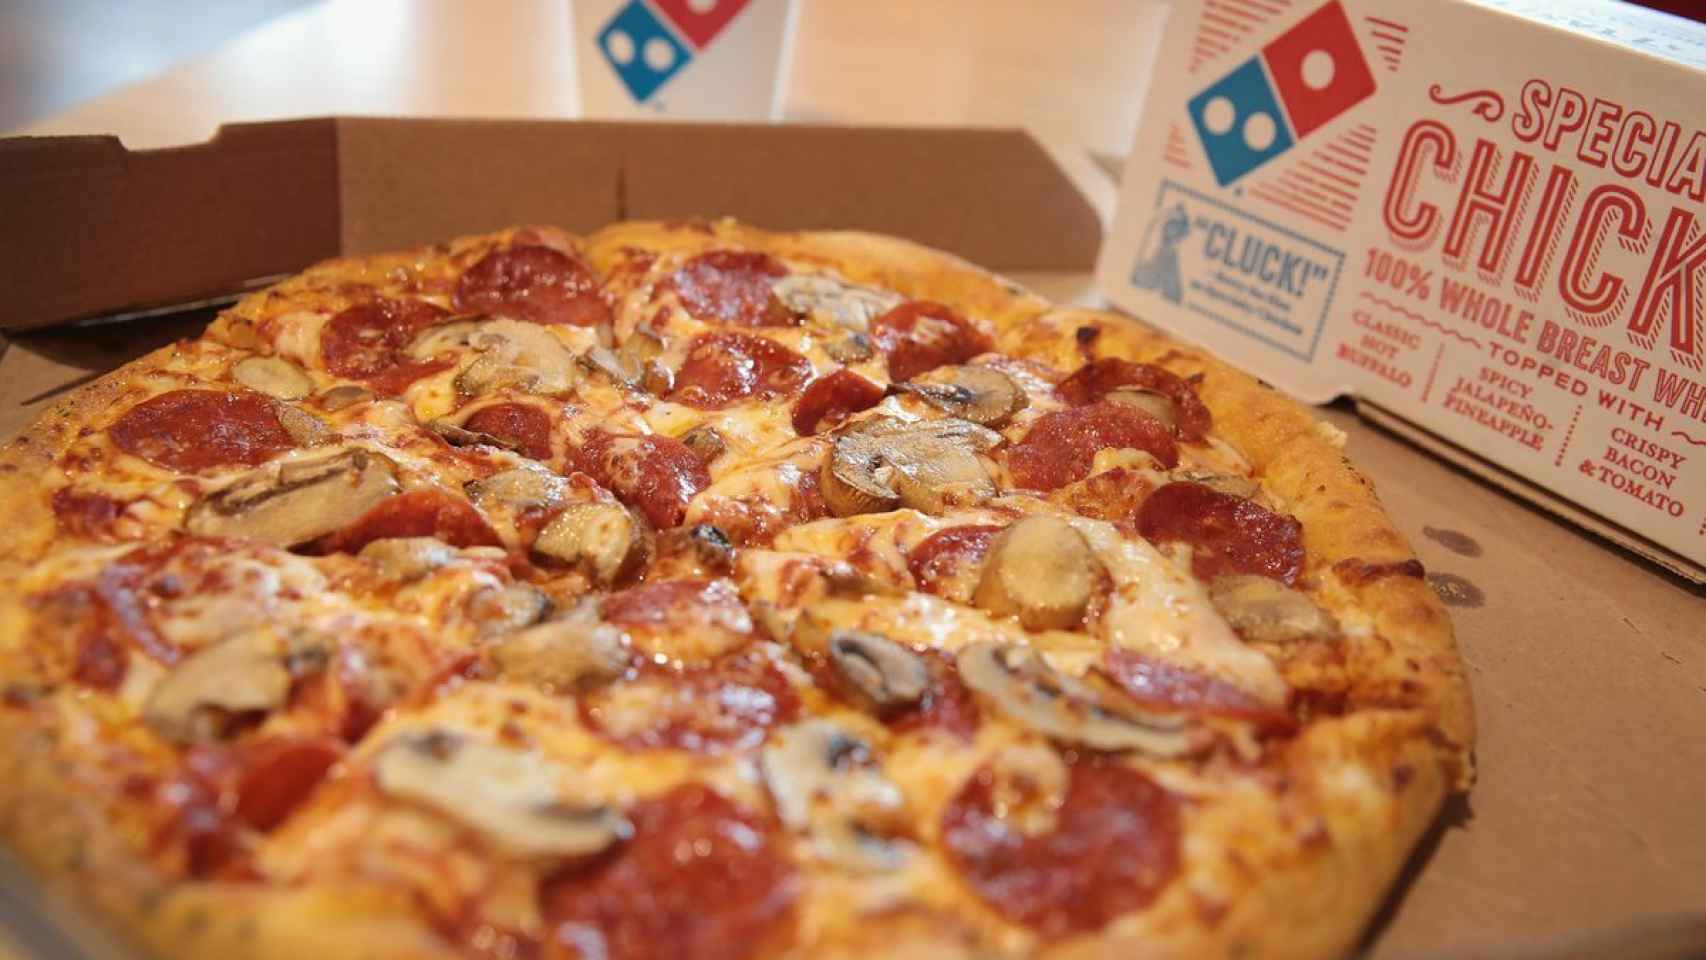 Una pizza de Domino's Pizza.